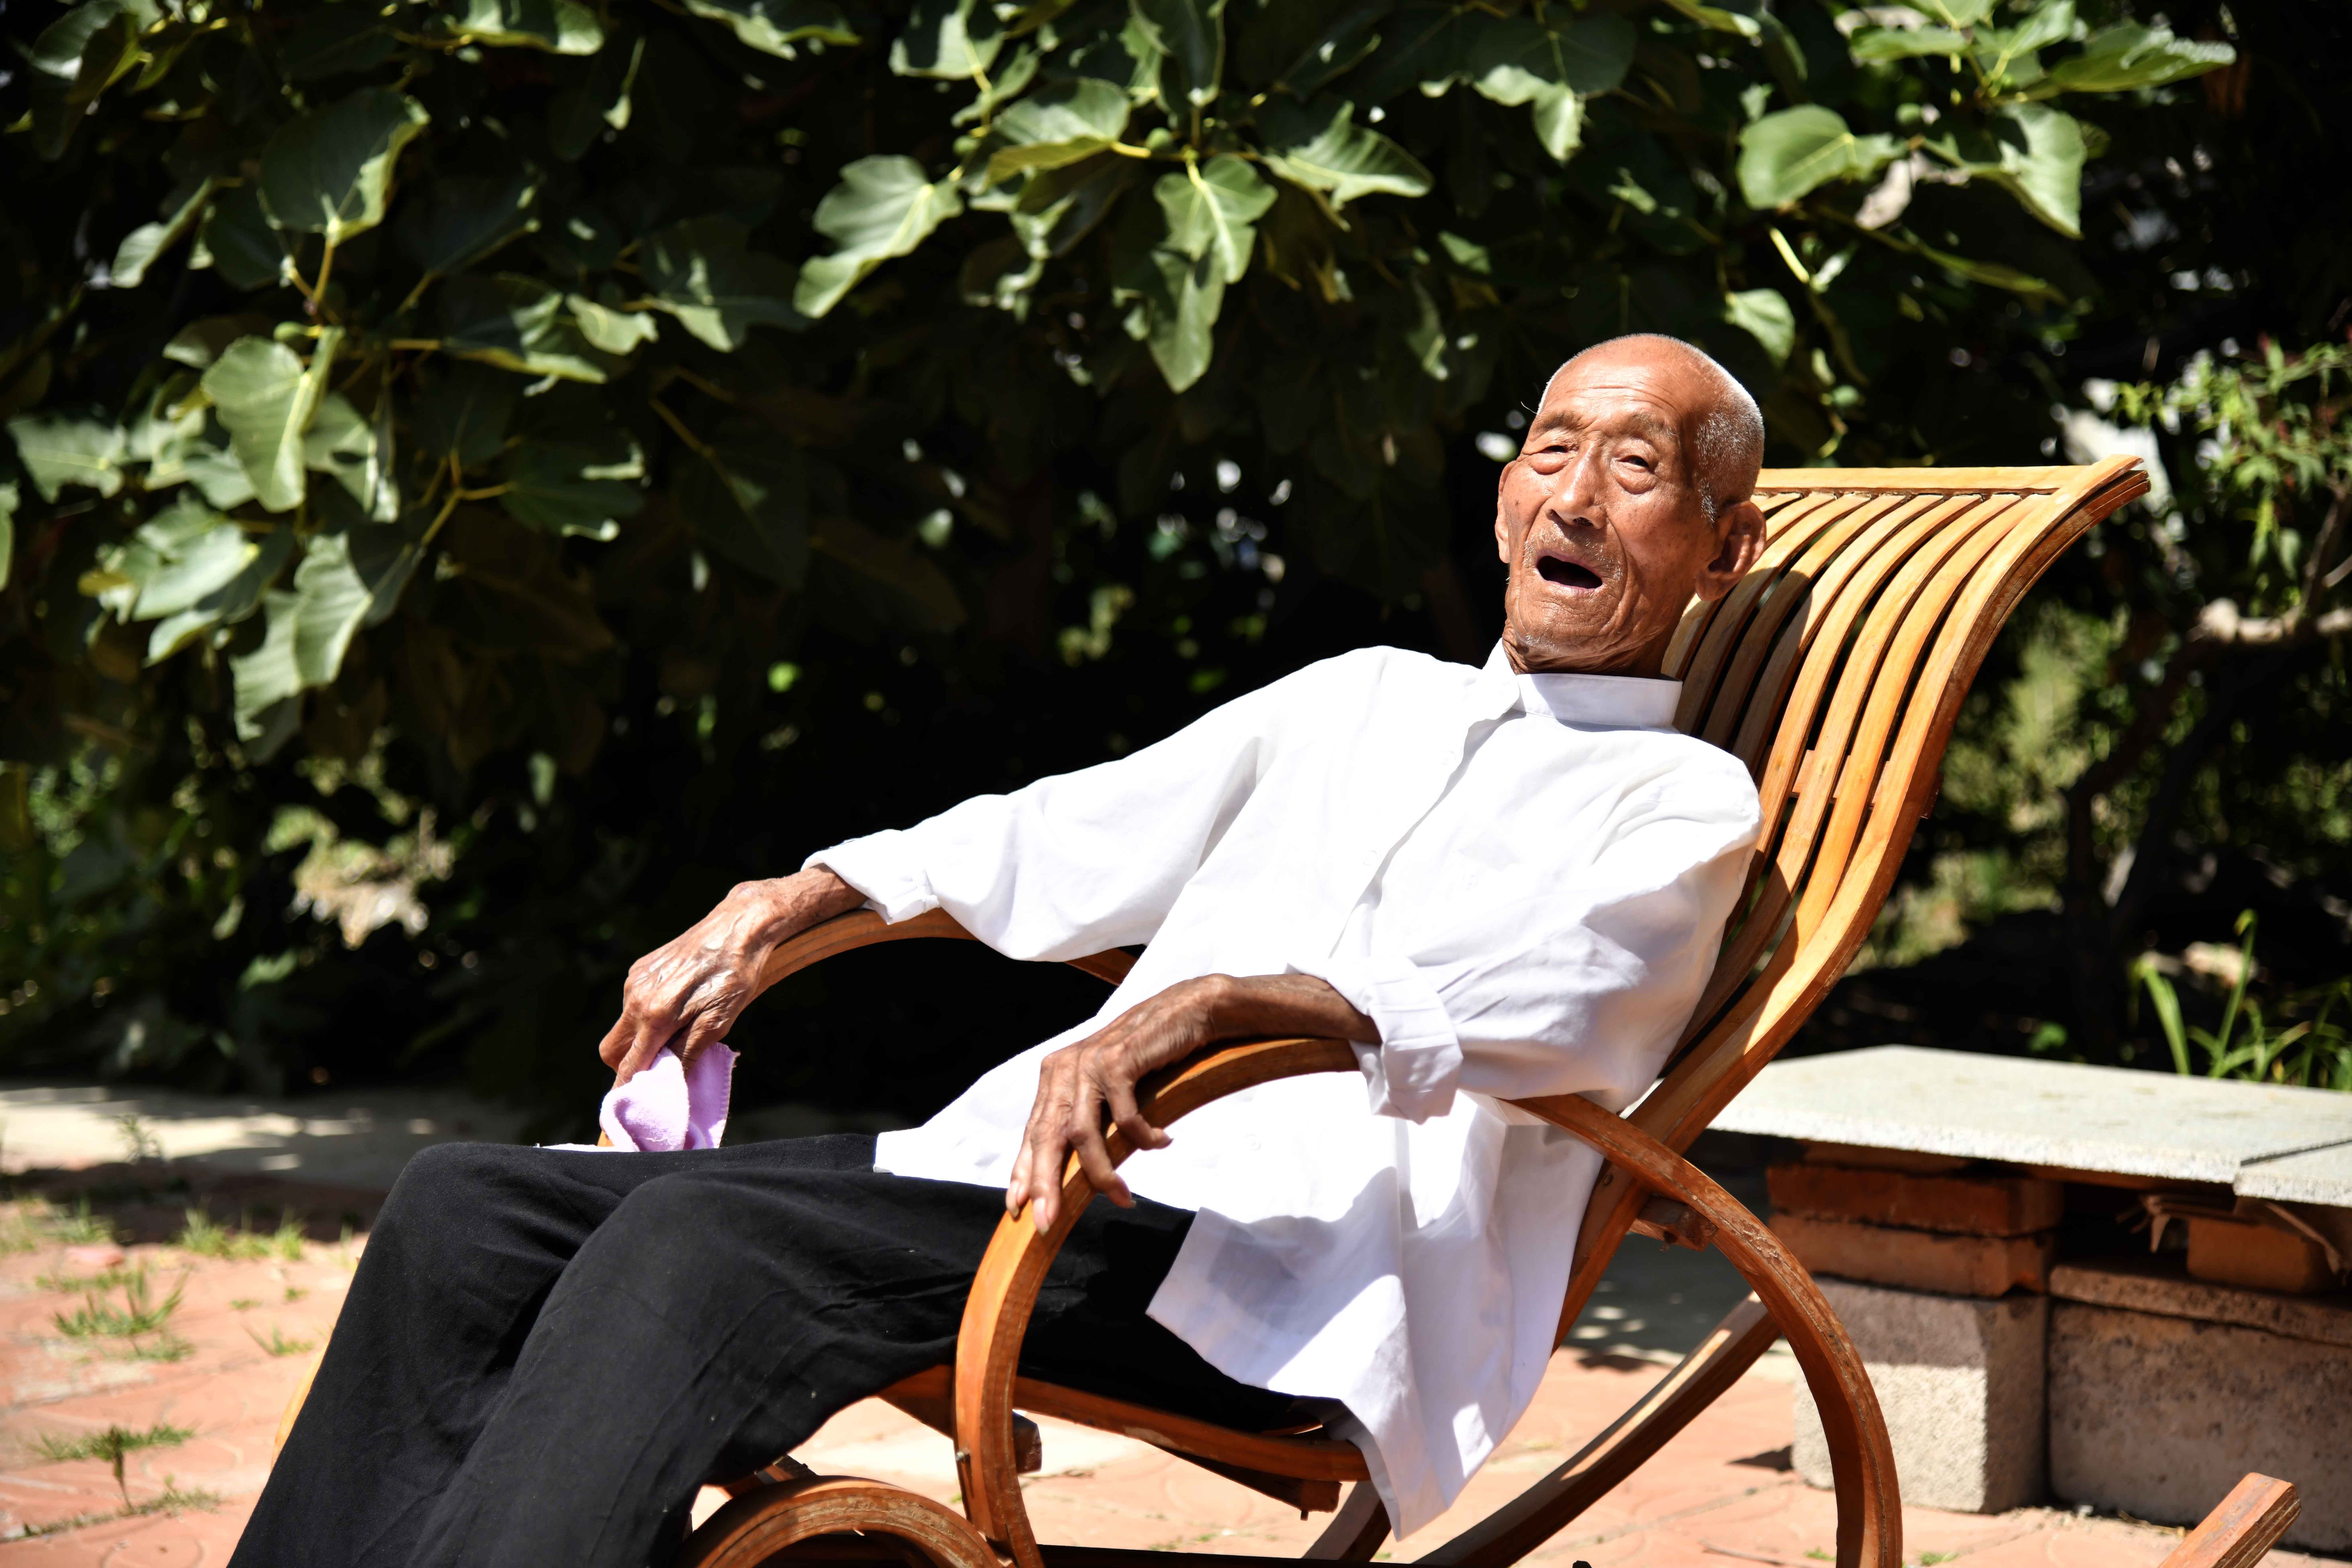 7月18日,在蓬莱市北沟镇阎家村,98岁的活烈士阎寿光在躺椅上休息